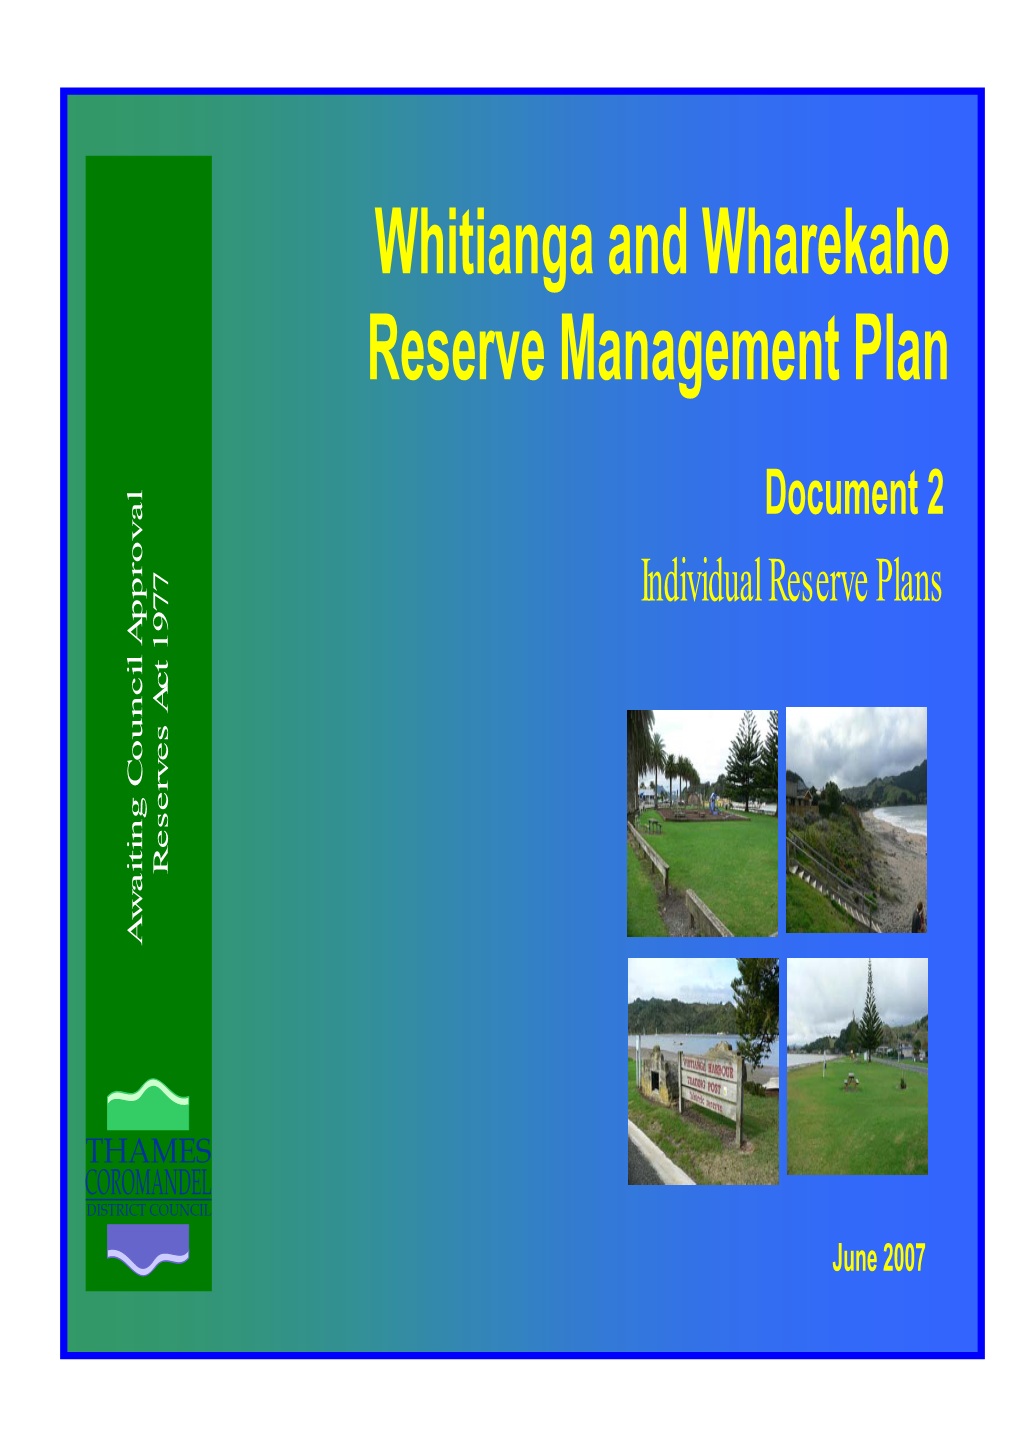 Whitianga and Wharekaho Reserve Management Plan